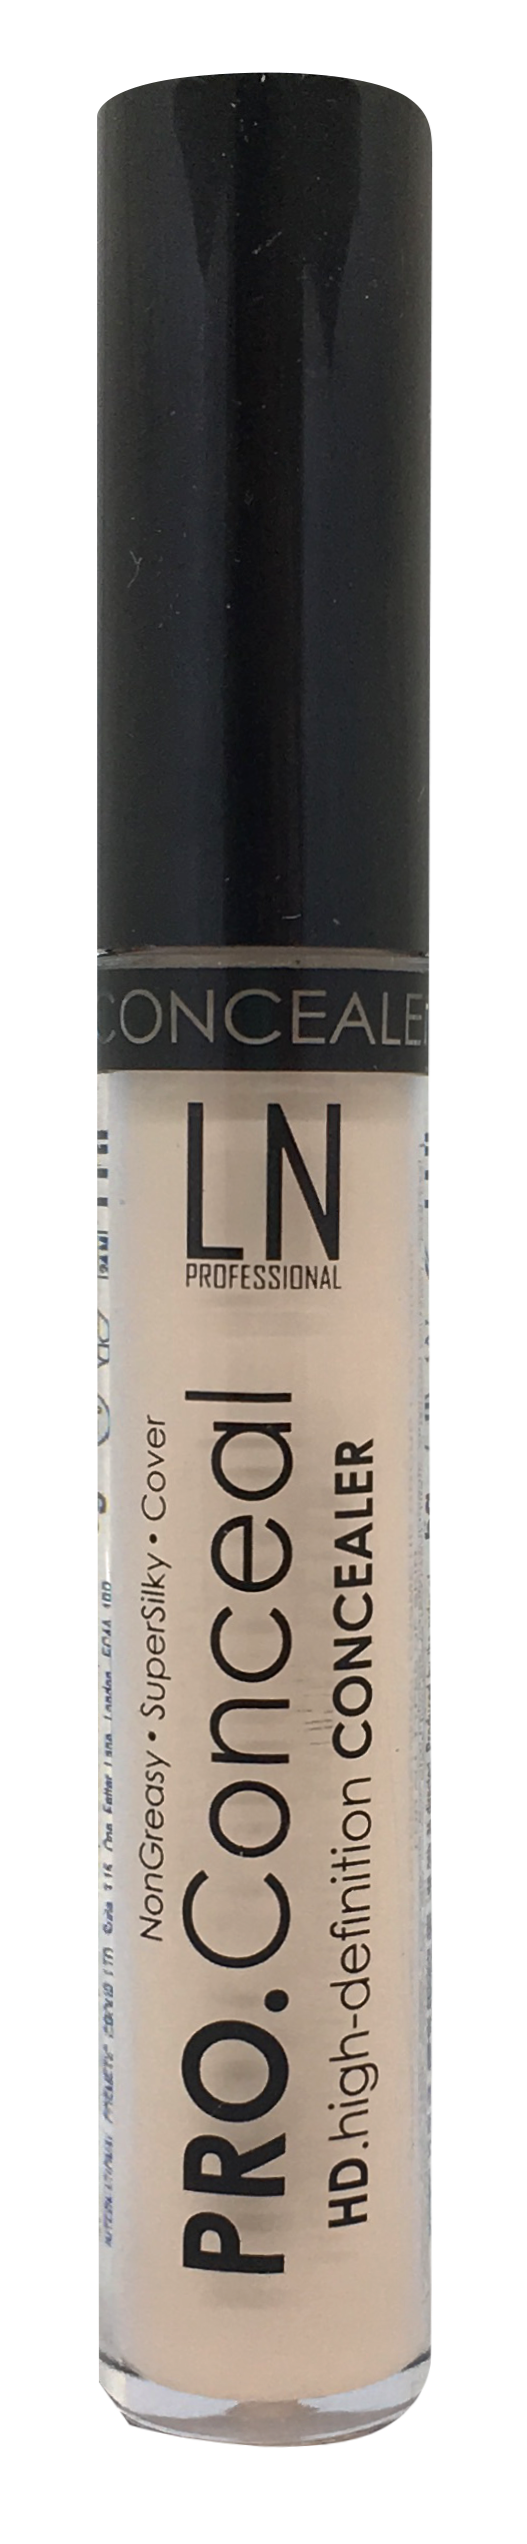 Жидкий консилер для лица LN Professional Pro.Conceal, тон 03, 6 мл - фото 1